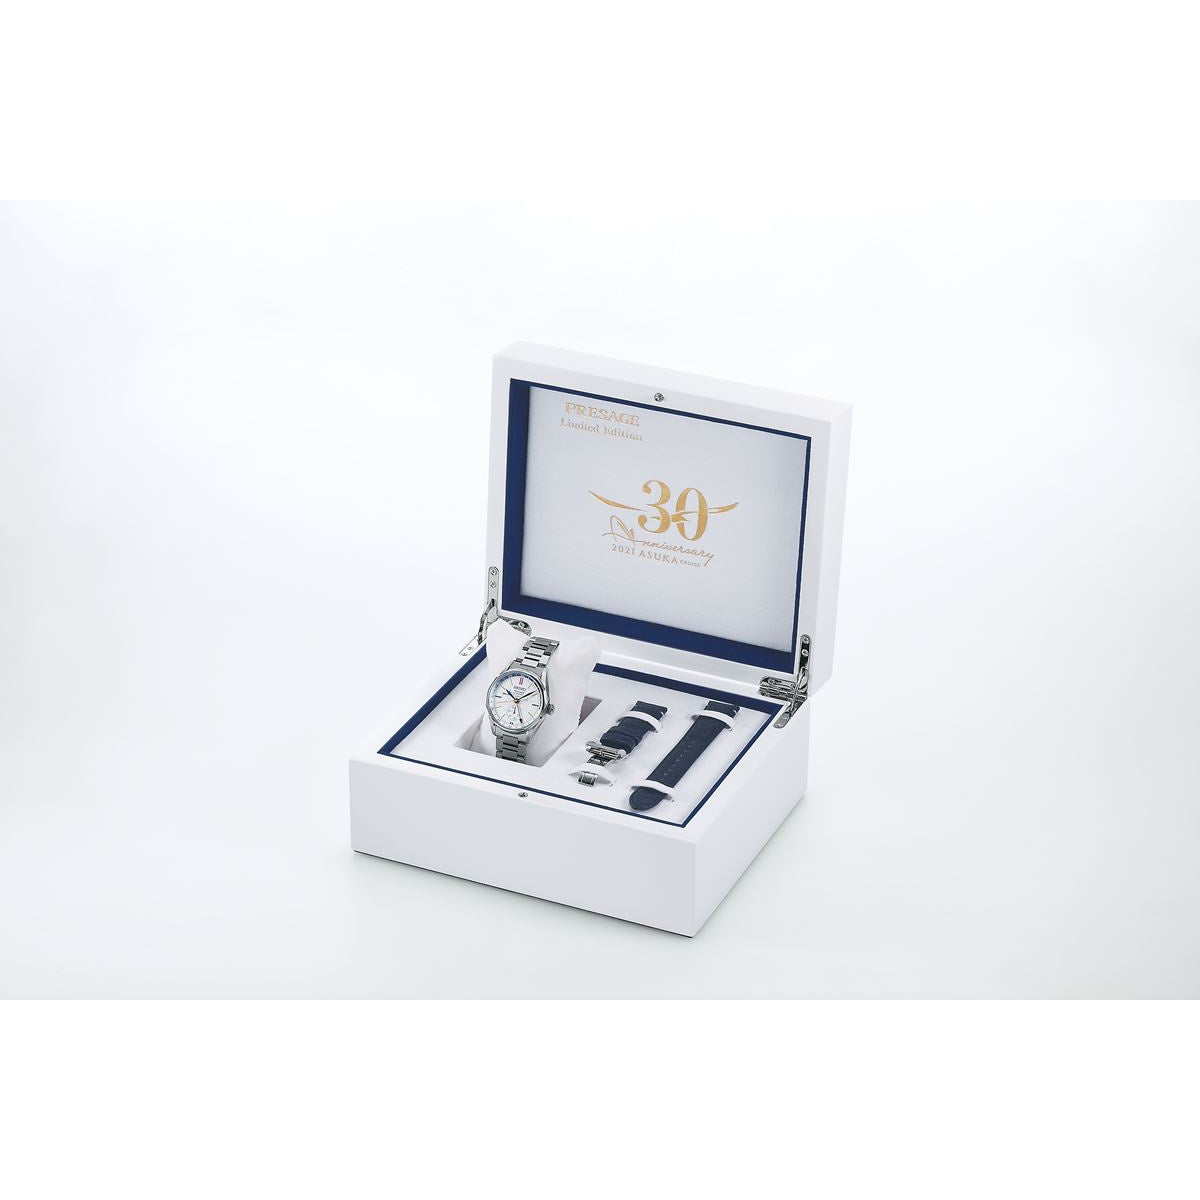 セイコー プレザージュ SEIKO PRESAGE 自動巻き メカニカル 腕時計 メンズ 飛鳥Ⅱコラボレーション限定モデル SARF015